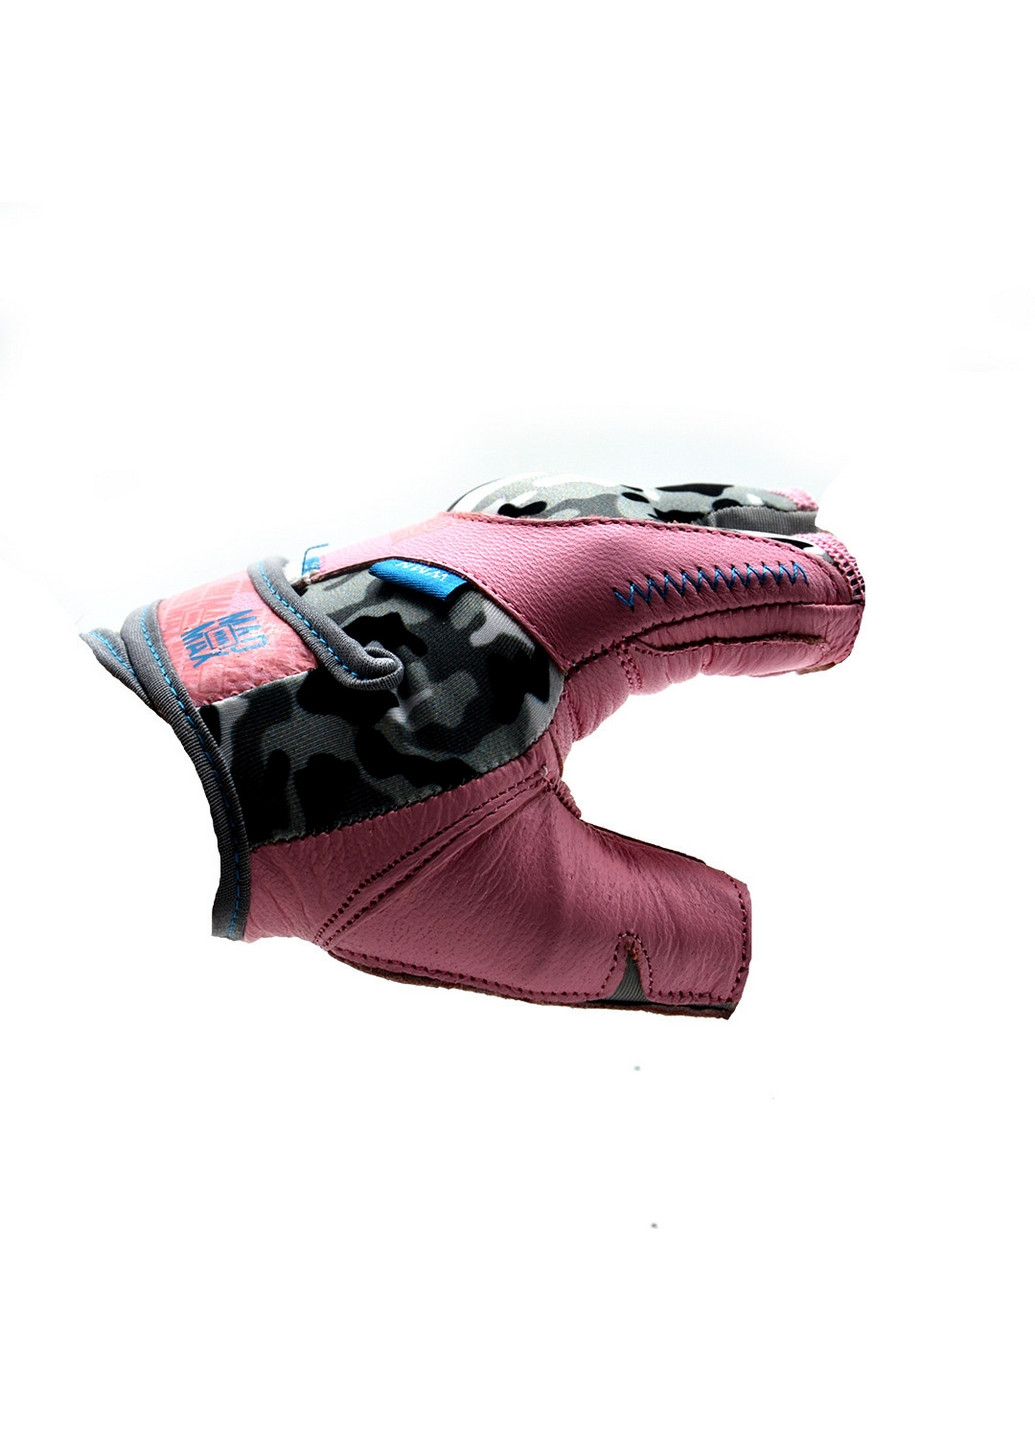 Унисекс перчатки для фитнеса M Mad Max (267659603)